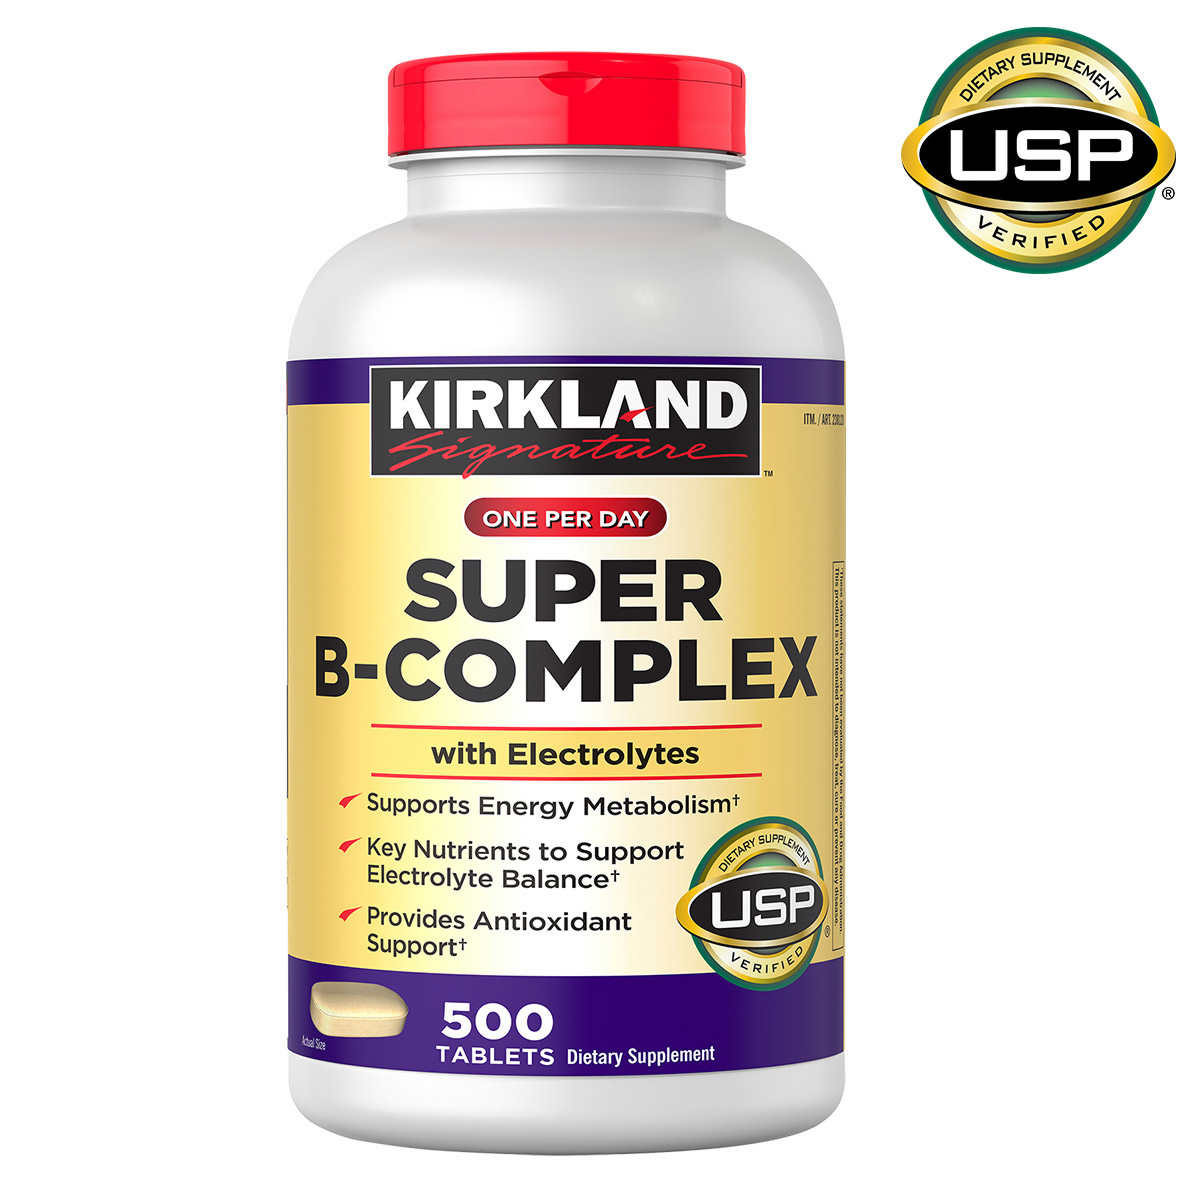 Viên uống Vitamin B tổng hợp Kirkland Super B-Complex 500 viên của Mỹ